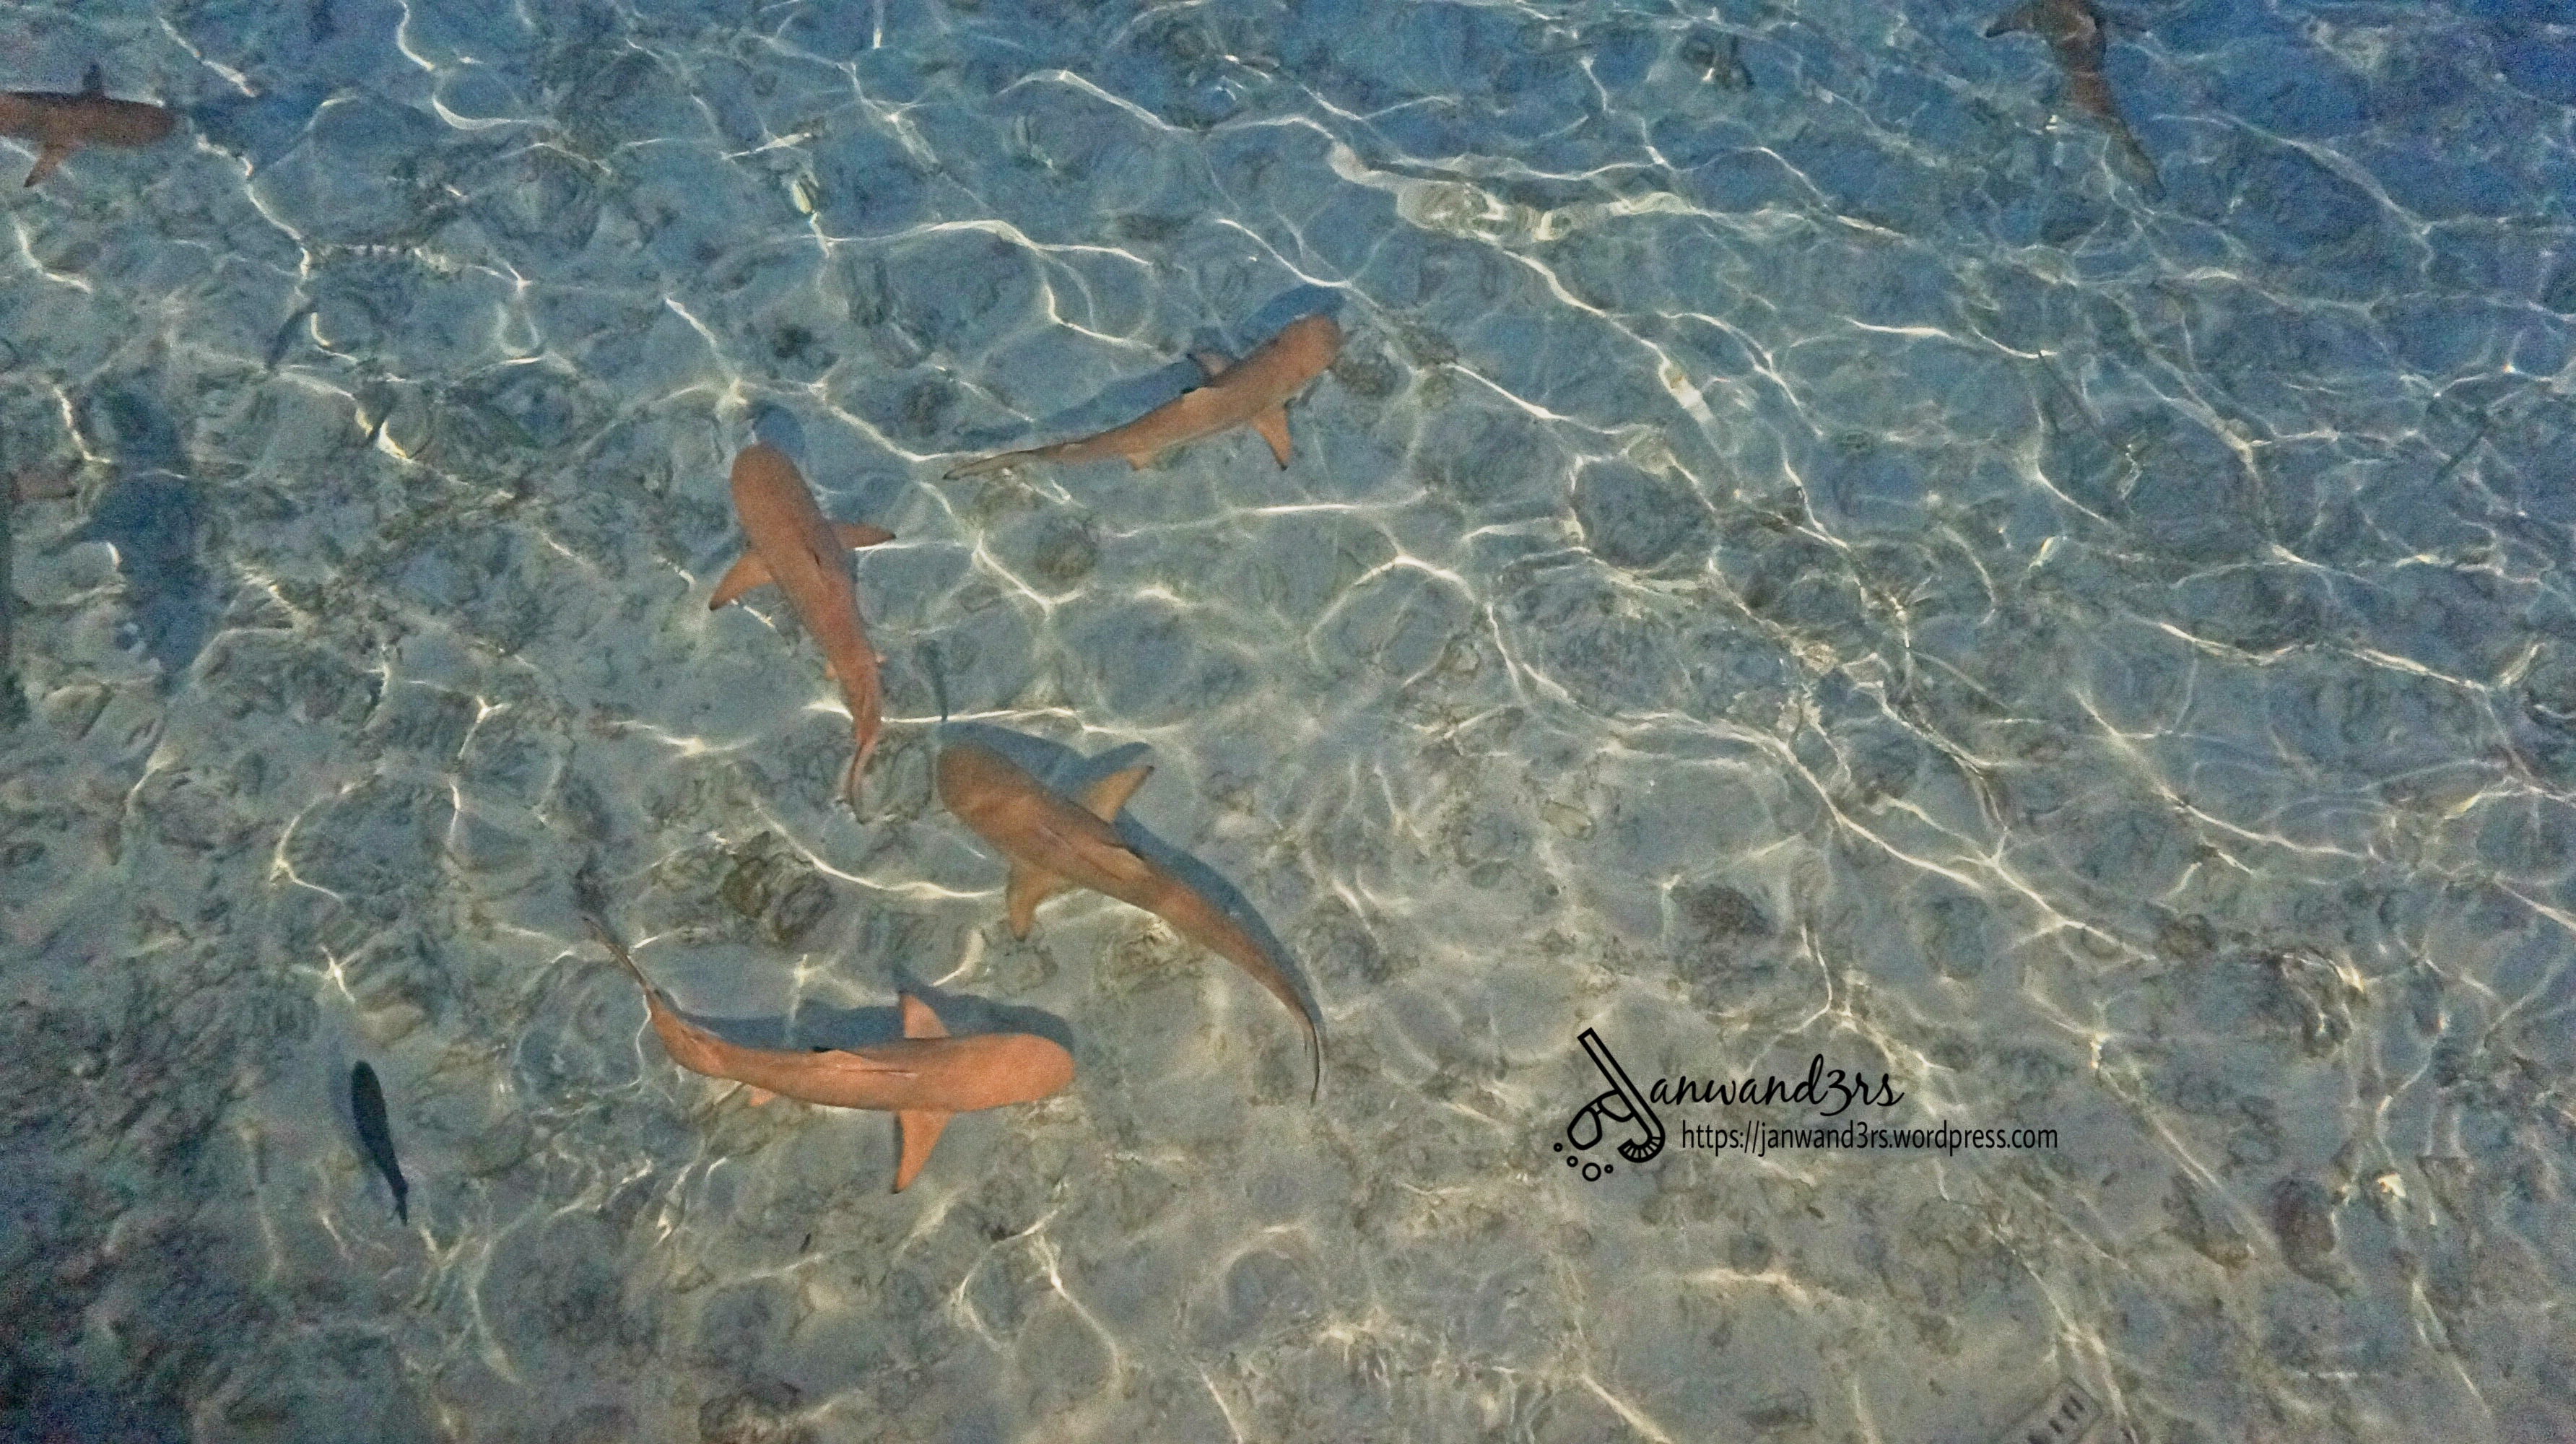 maldives-reef-shark.jpg